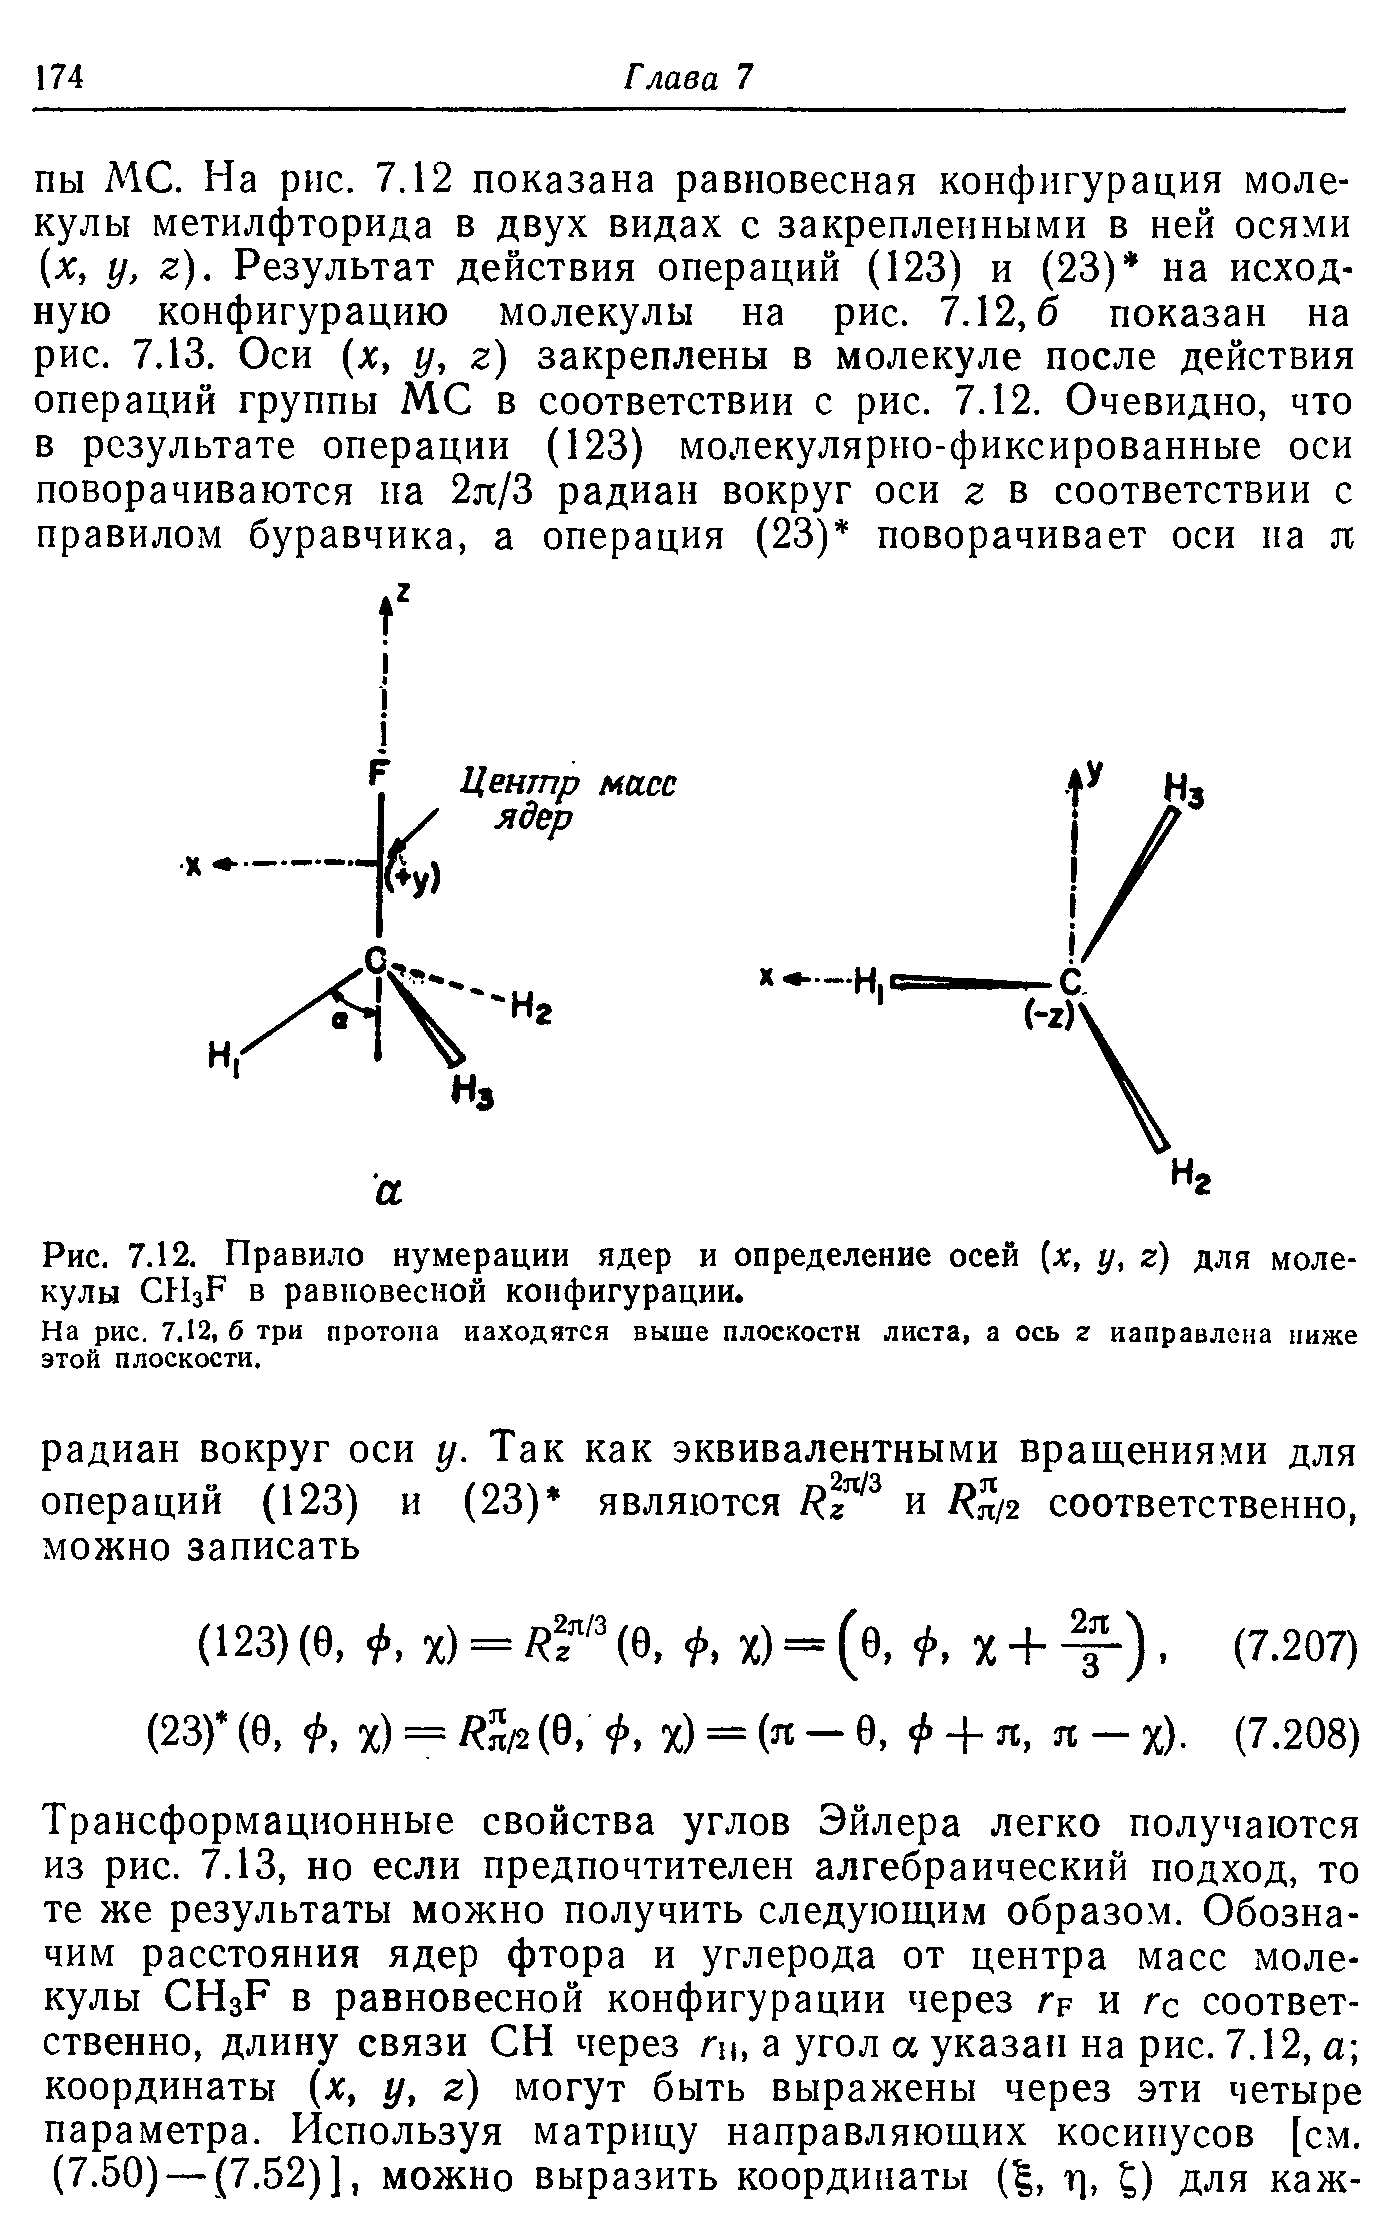 Рис. 7.12. Правило нумерации ядер и определение осей [х, у, г) для молекулы H3F в равновесной конфигурации.
